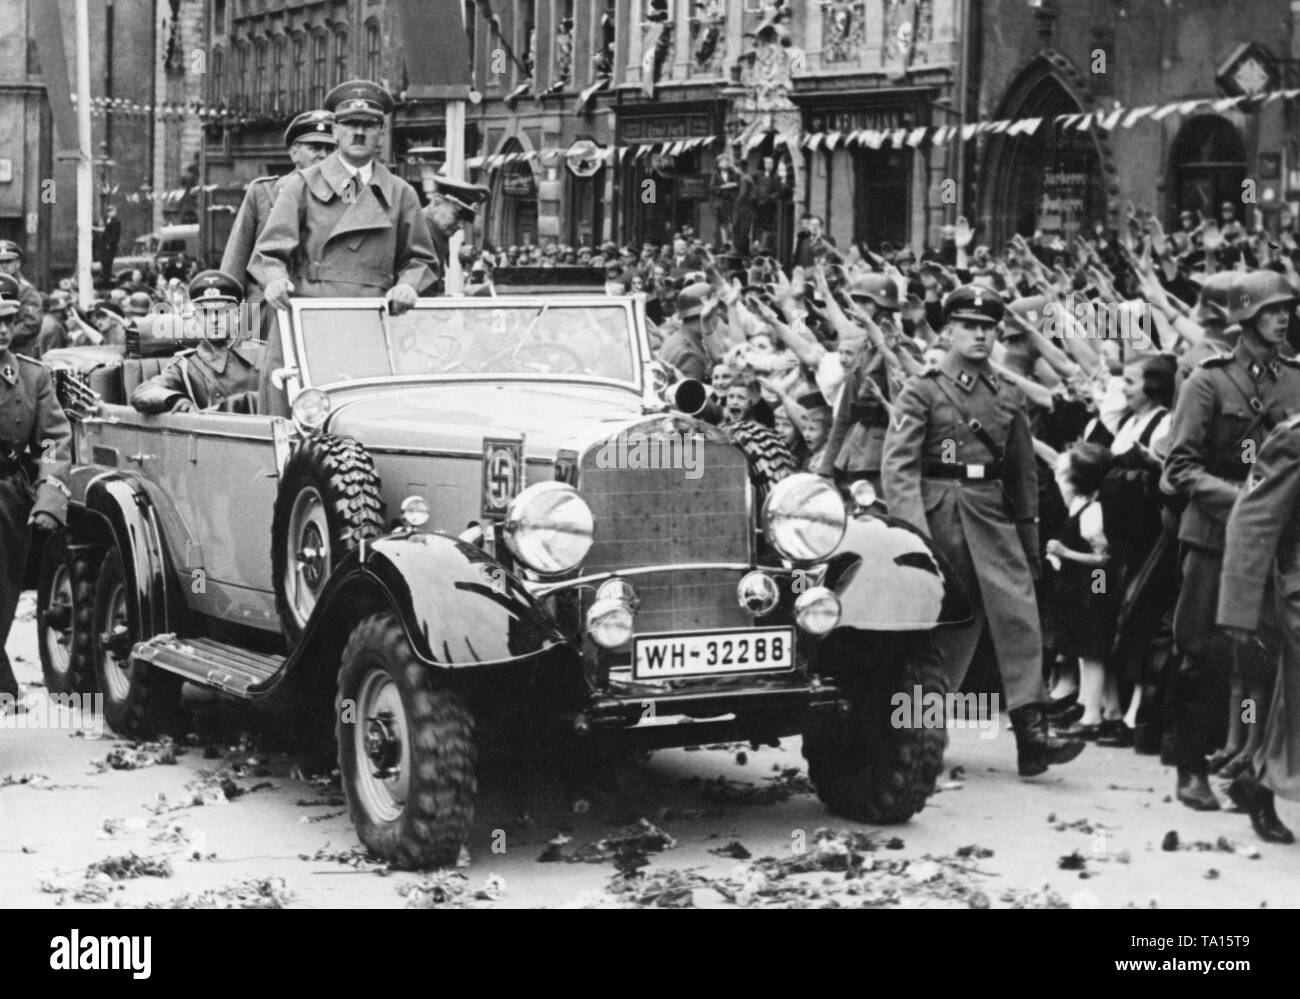 Adolf Hitler in Eger im Sudetenland. Hitlers Autokolonne durch die jubelnde Bevölkerung. Sie sind Gruß ihn mit den Hitlergruß. Adjutant Rudolf Schmundt sitzt auf der linken Seite des Autos, Bodyguards der SS sind zu Fuß neben dem Wagen. Stockfoto